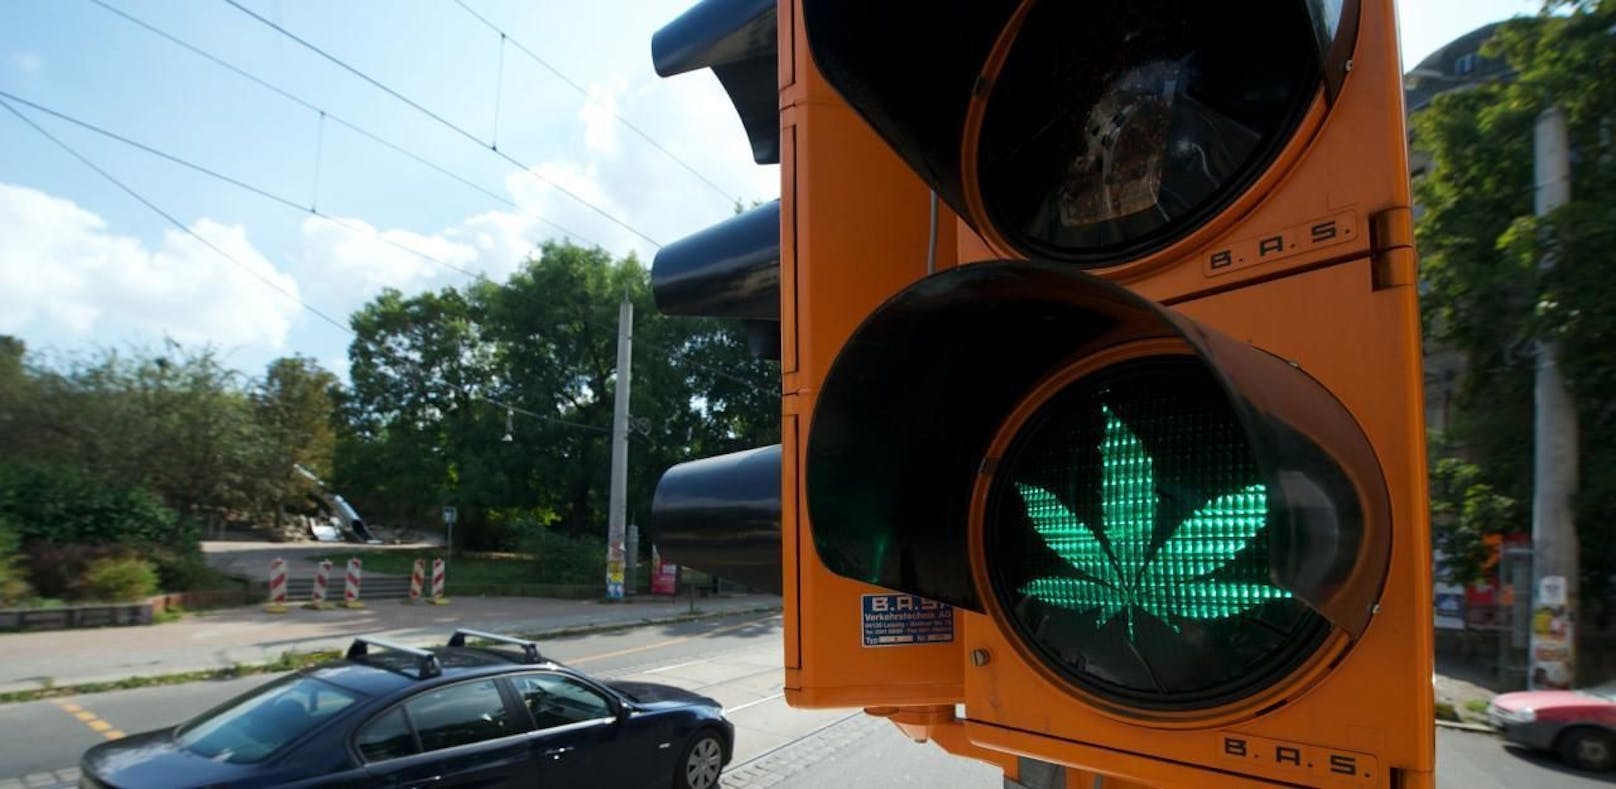 Luxemburg will Cannabis legalisieren